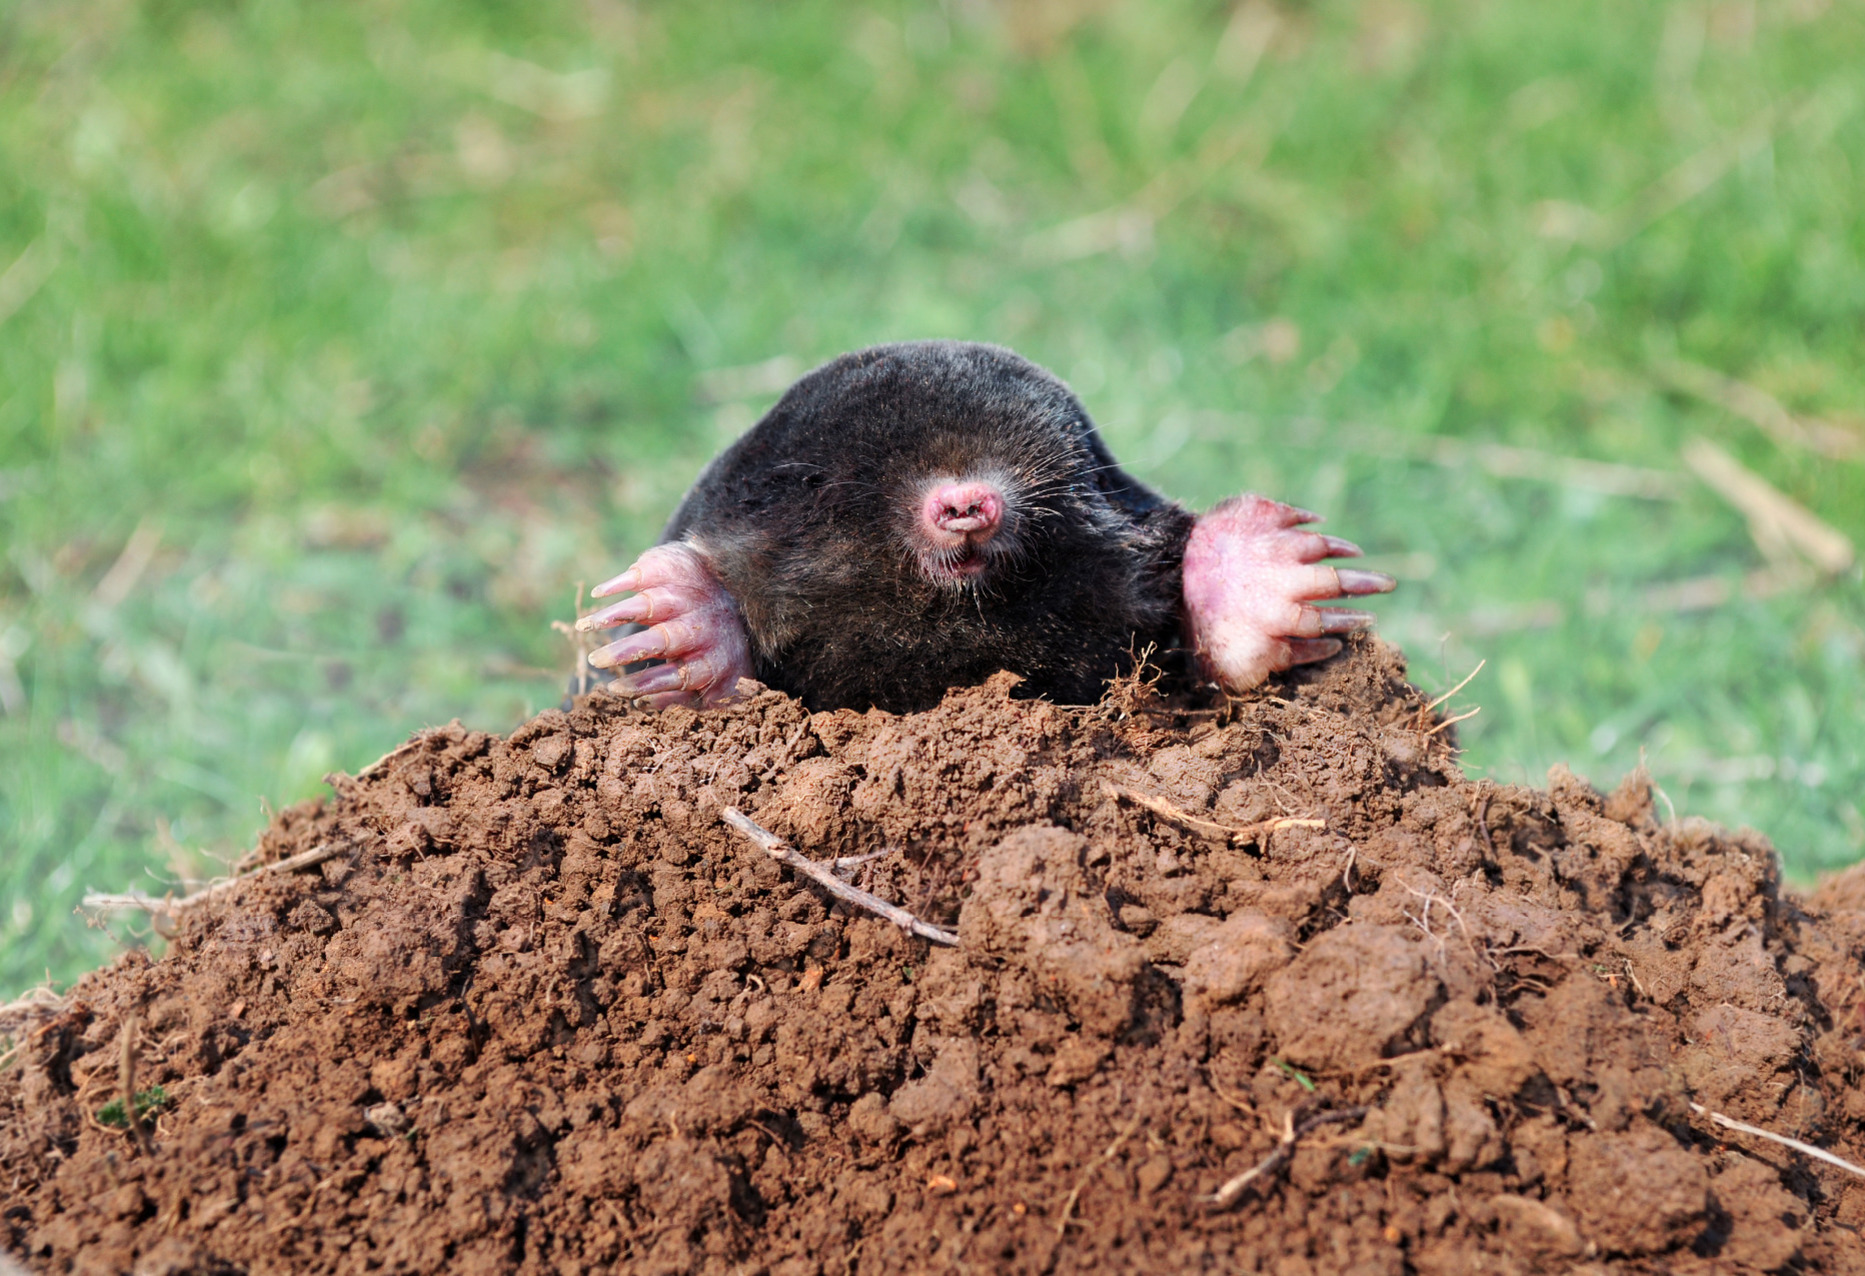 Mole on a molehill